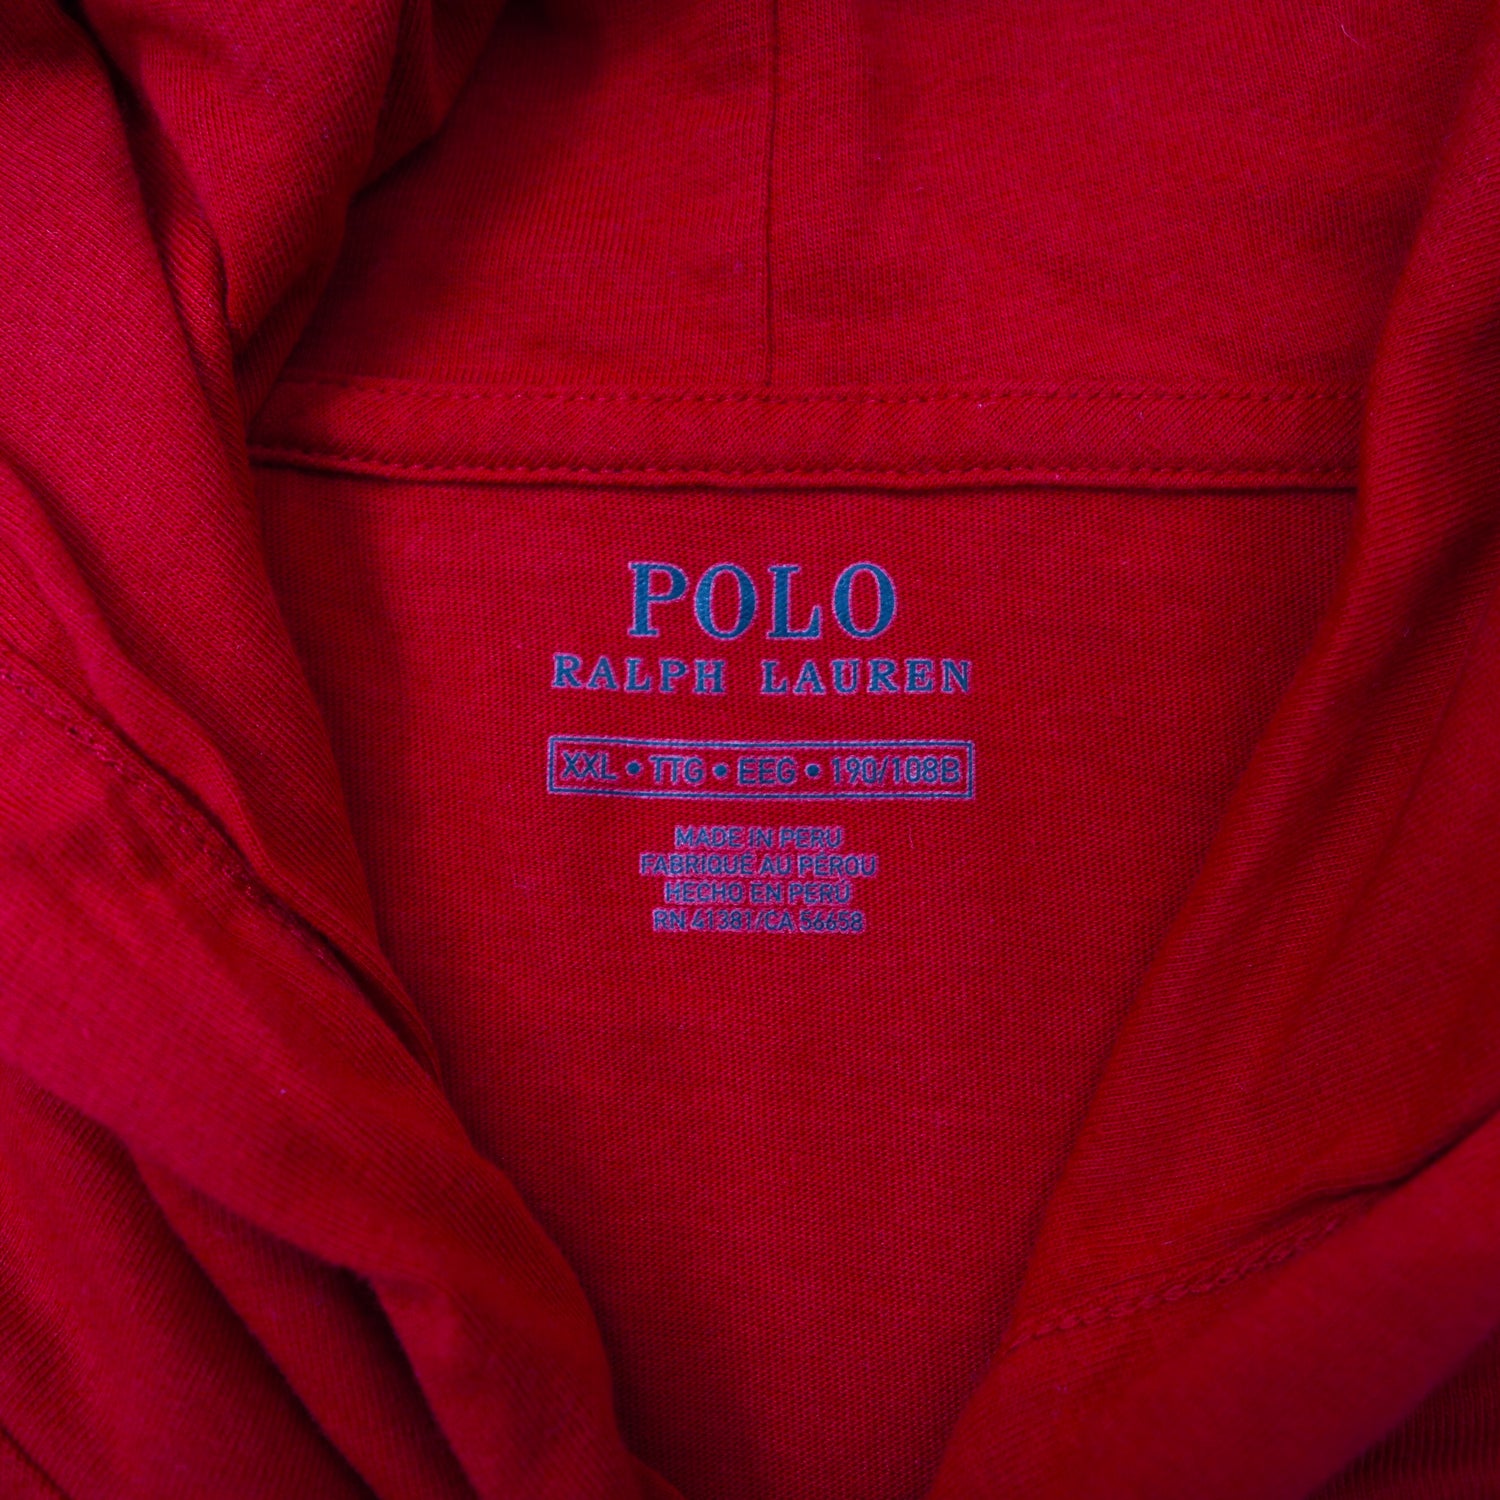 POLO RALPH LAUREN Hoody Long Sleeve T -shirt XXL Red Cotton Big 